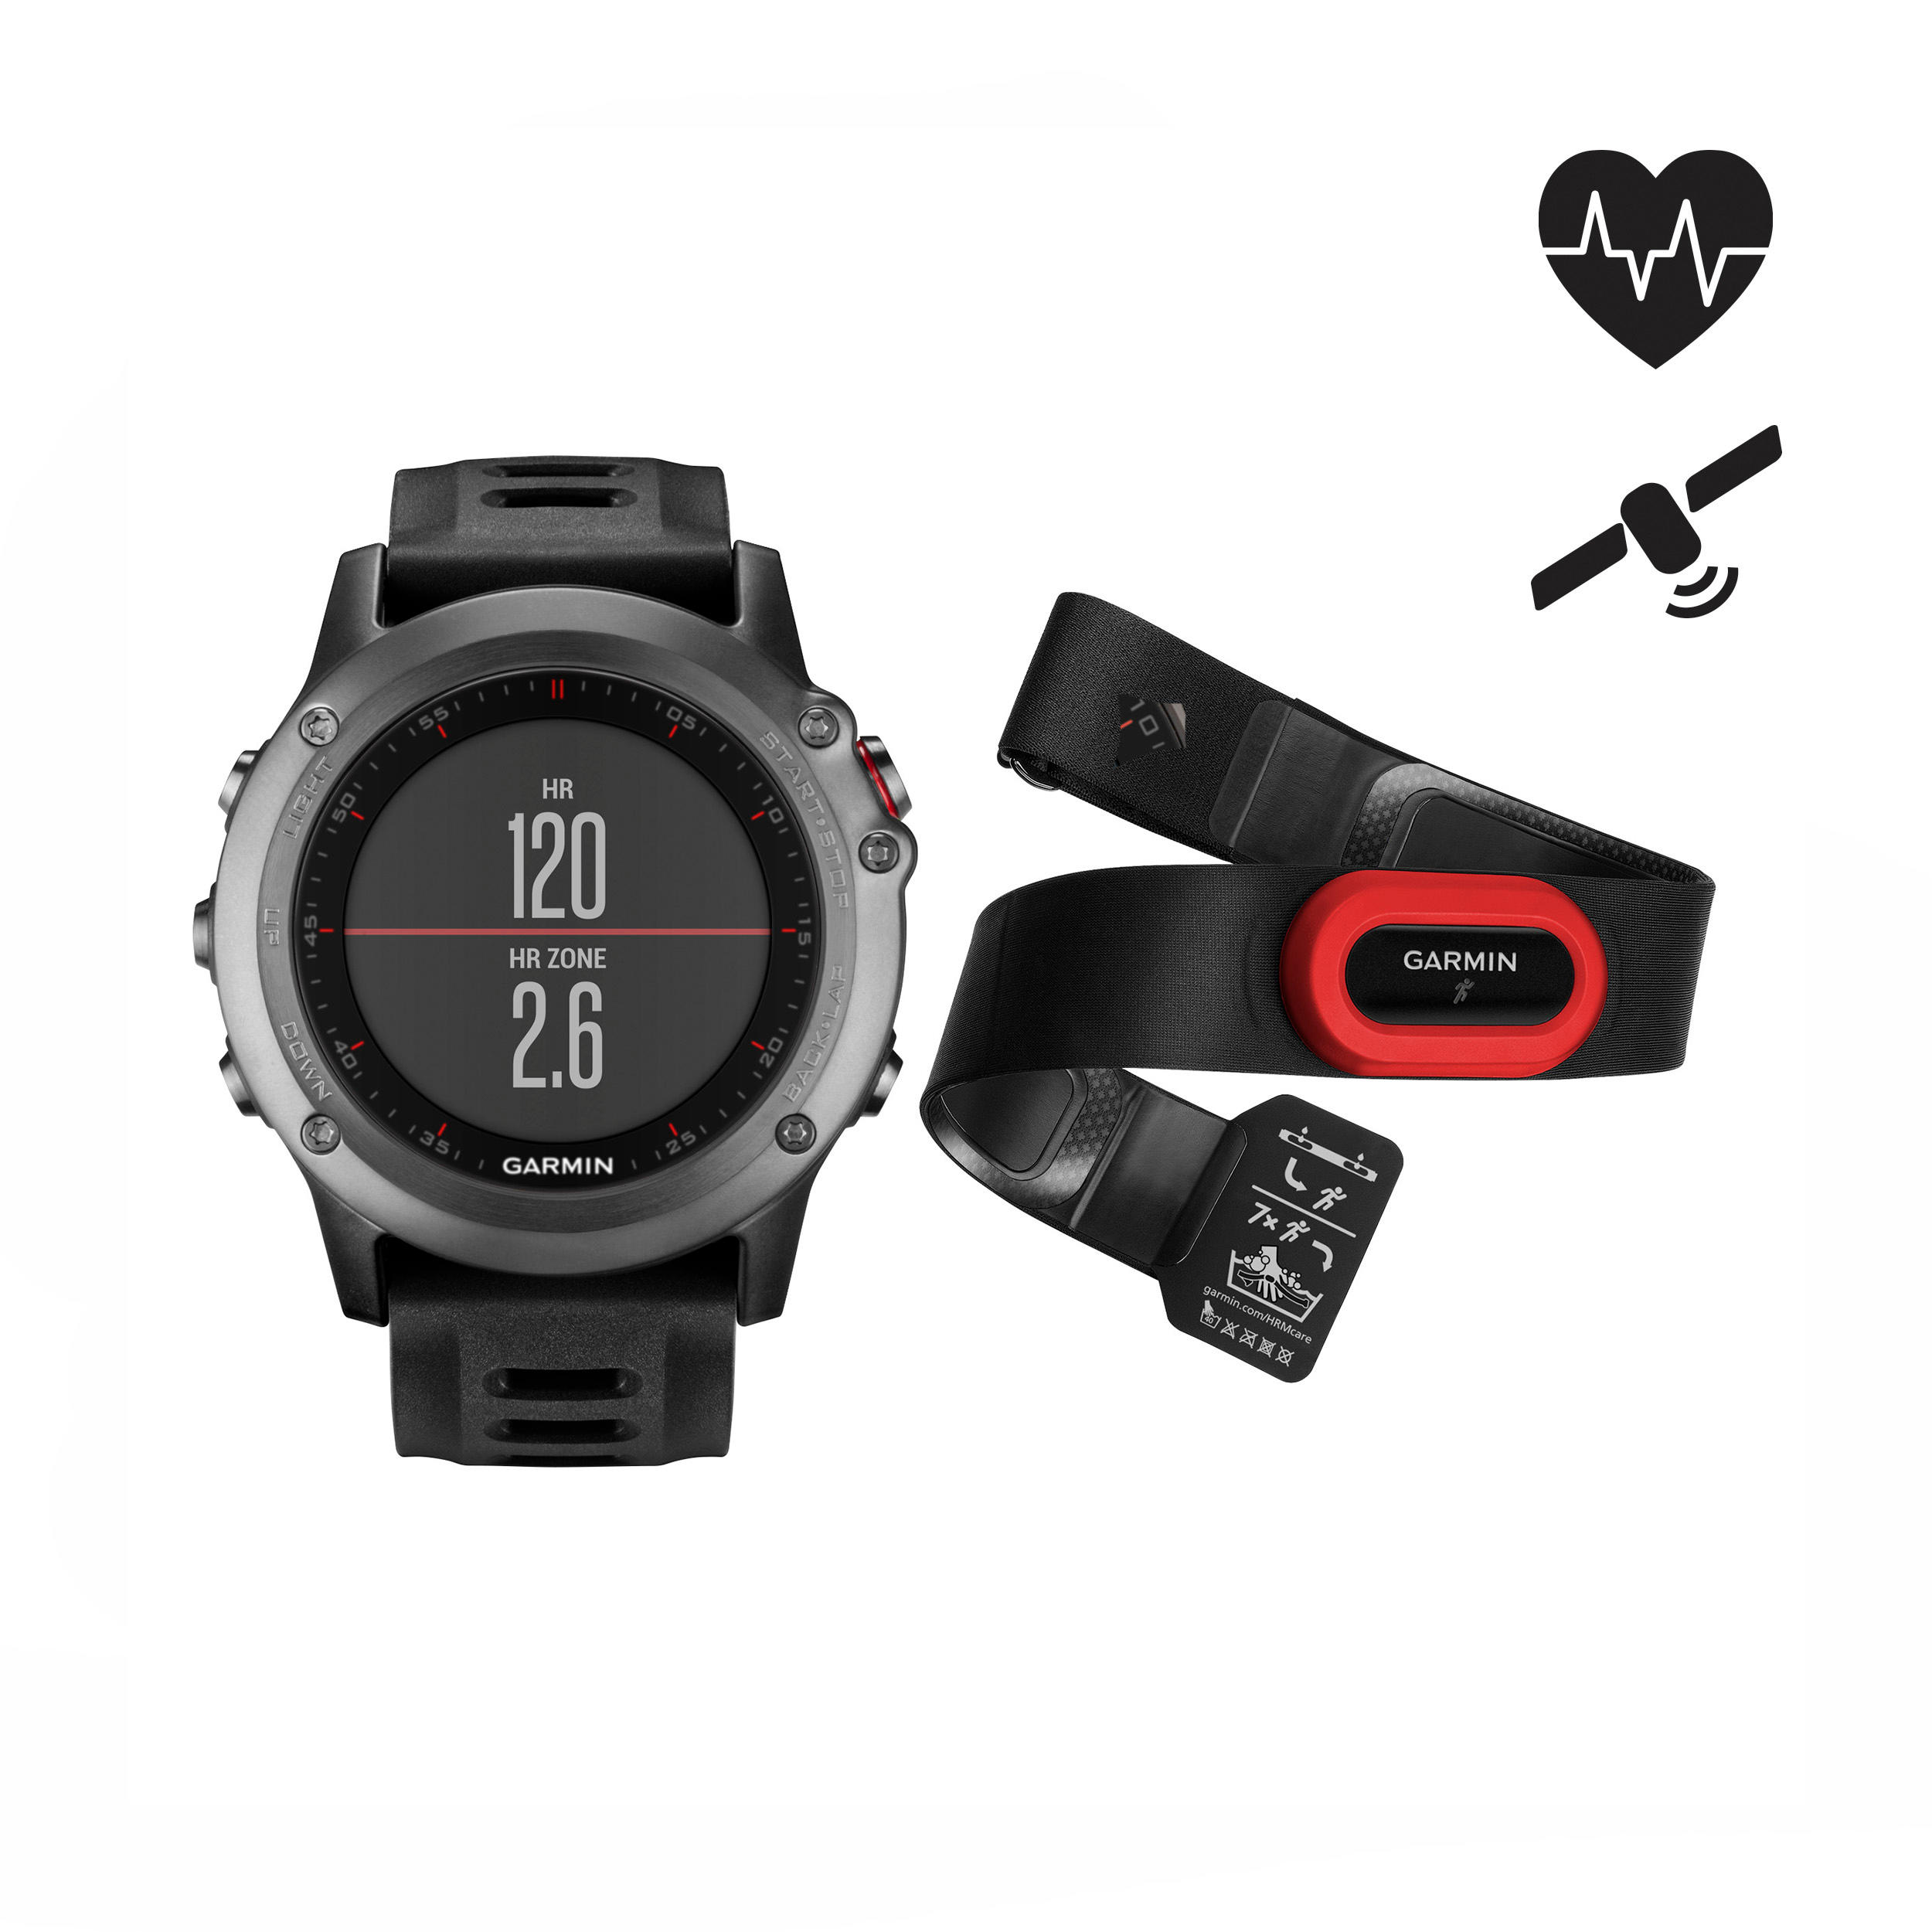 GARMIN Fenix 3 Performer multisport GPS watch with HRM strap grey